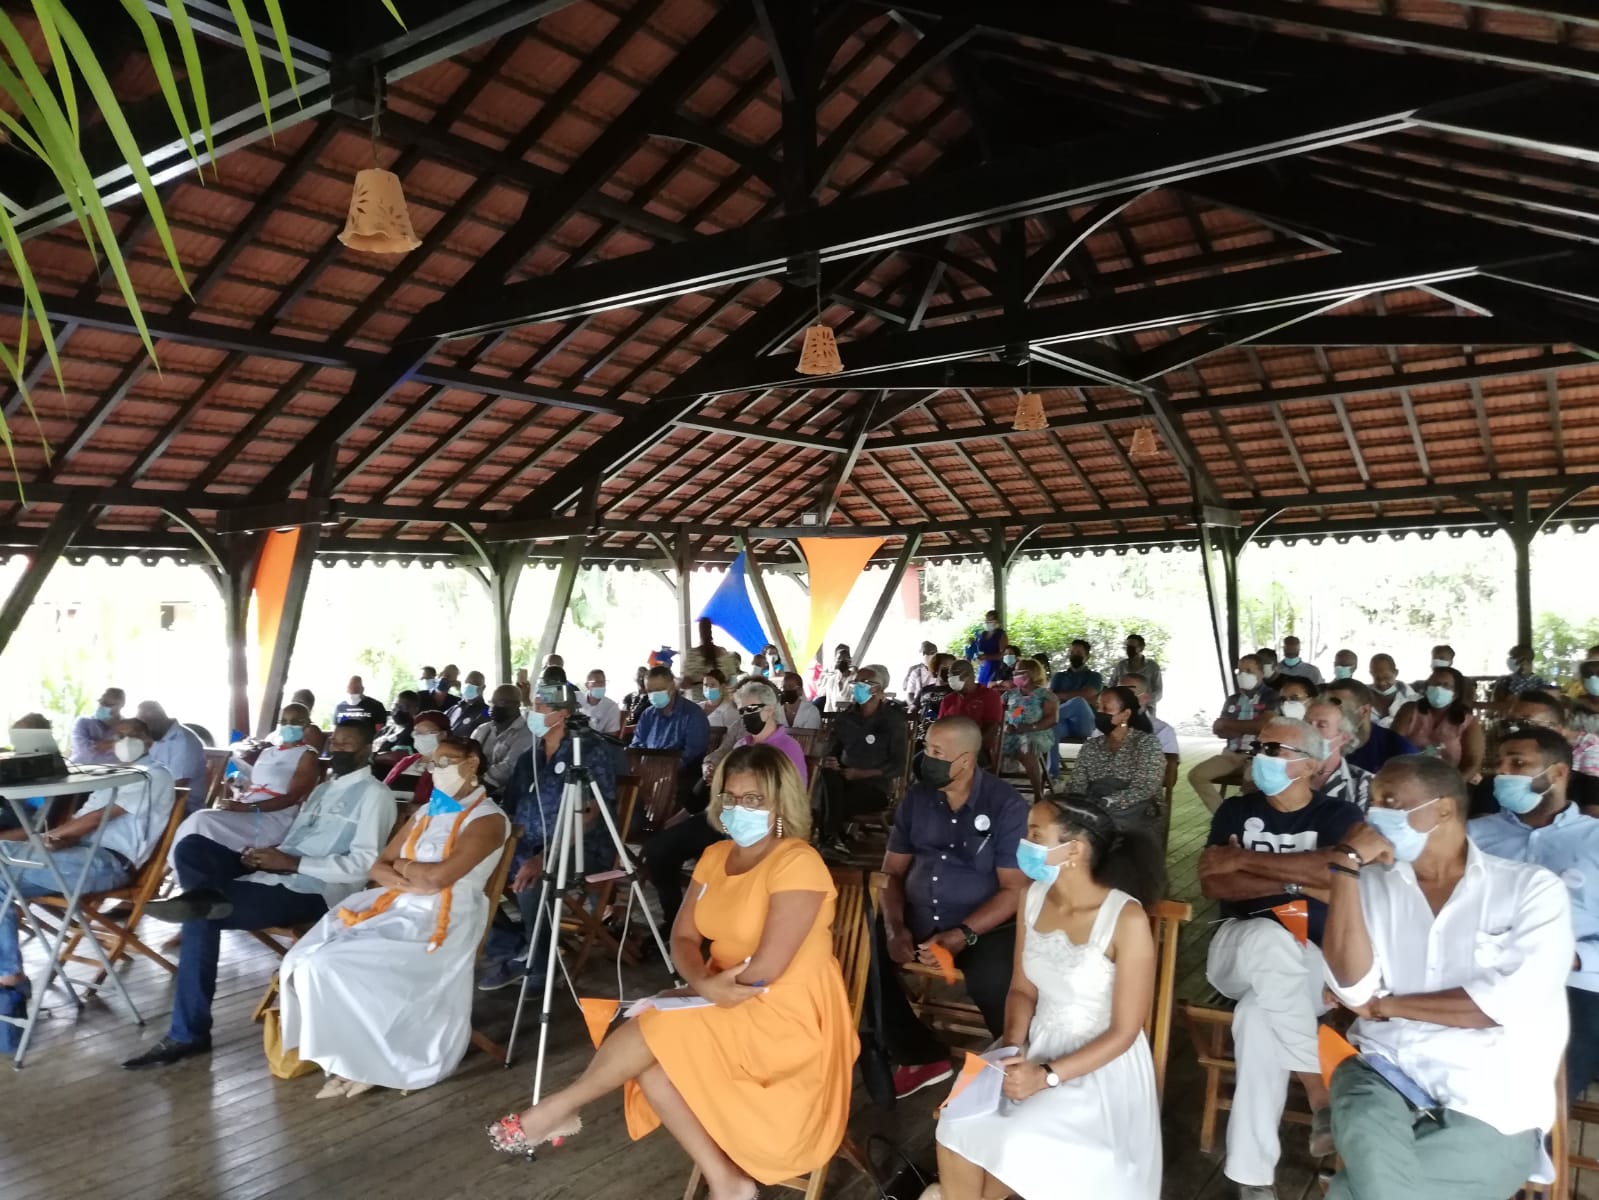     Le parti politique "La Martinique Ensemble" conclut son congrès fondateur

